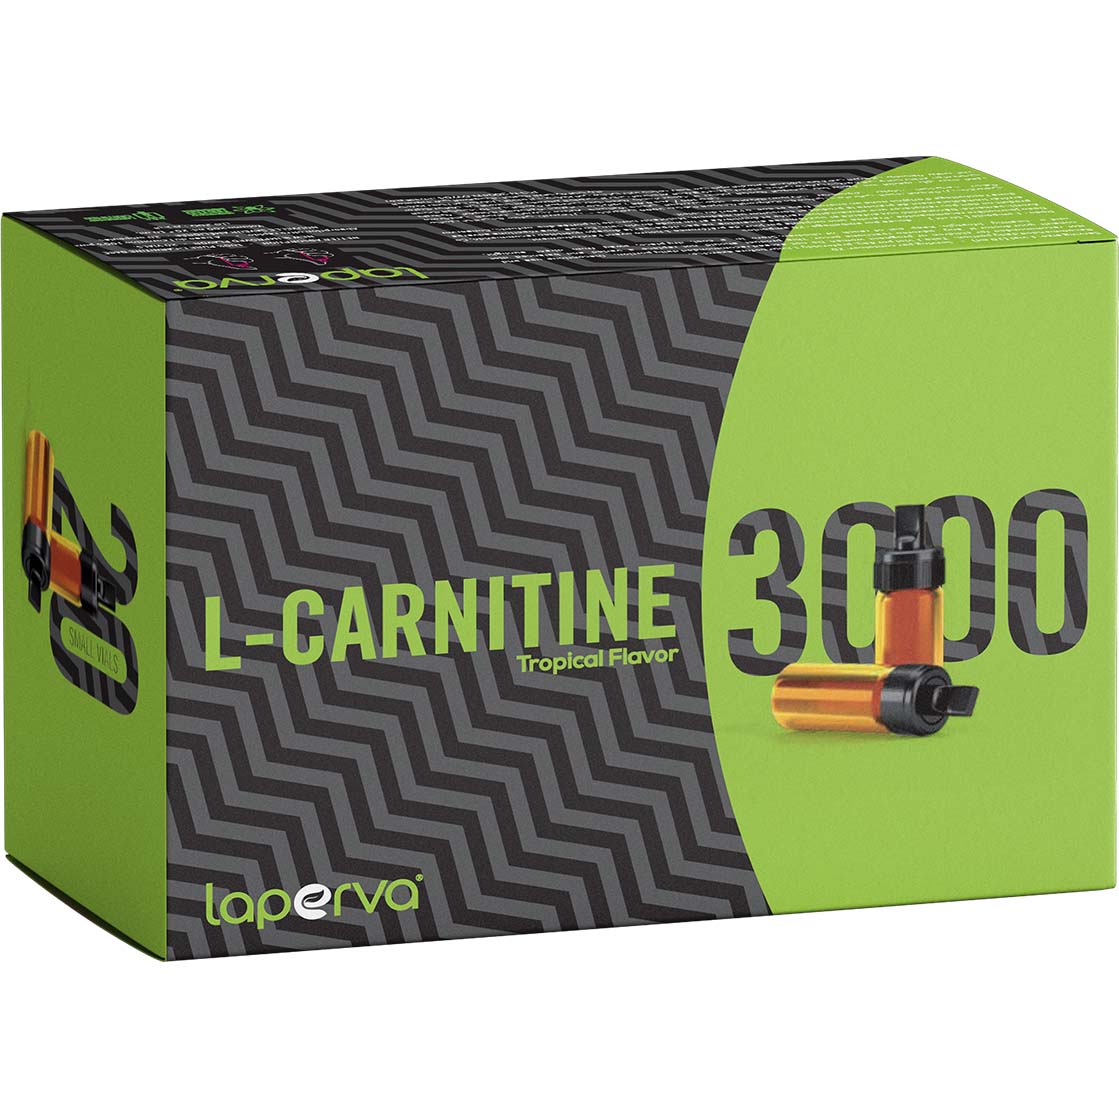 Laperva L Carnitine 3000, Tropical, 20 Vials